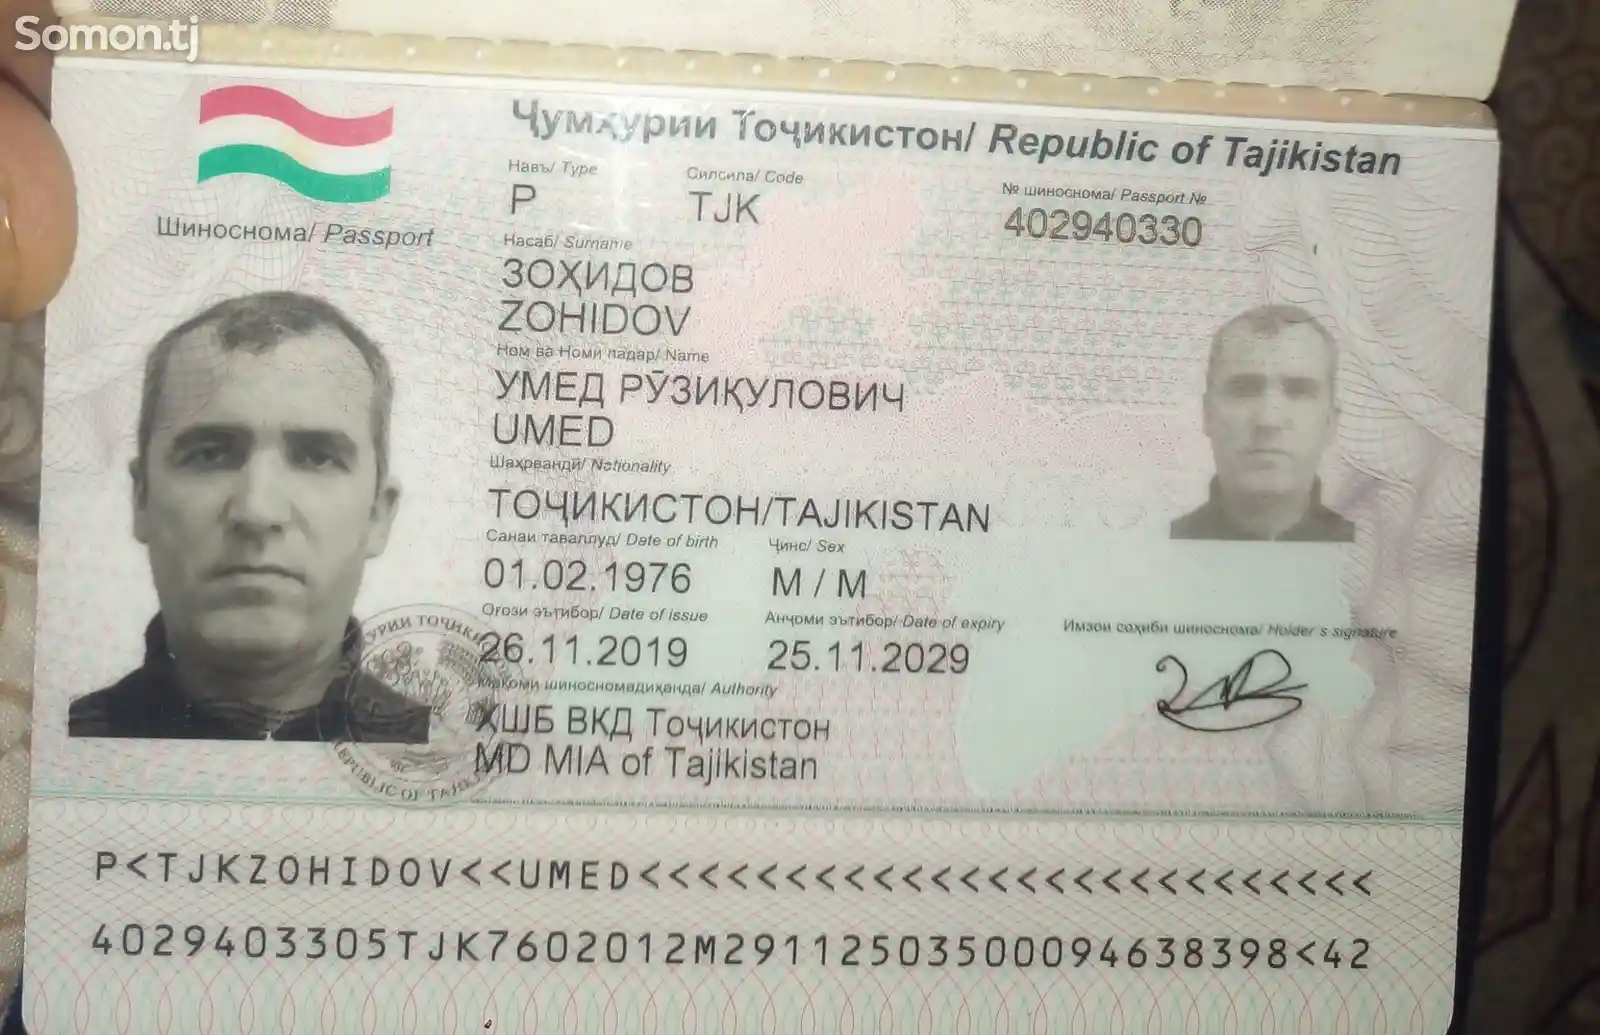 Найден паспорт на имя Хамидова Абдурасула Халиловича-4